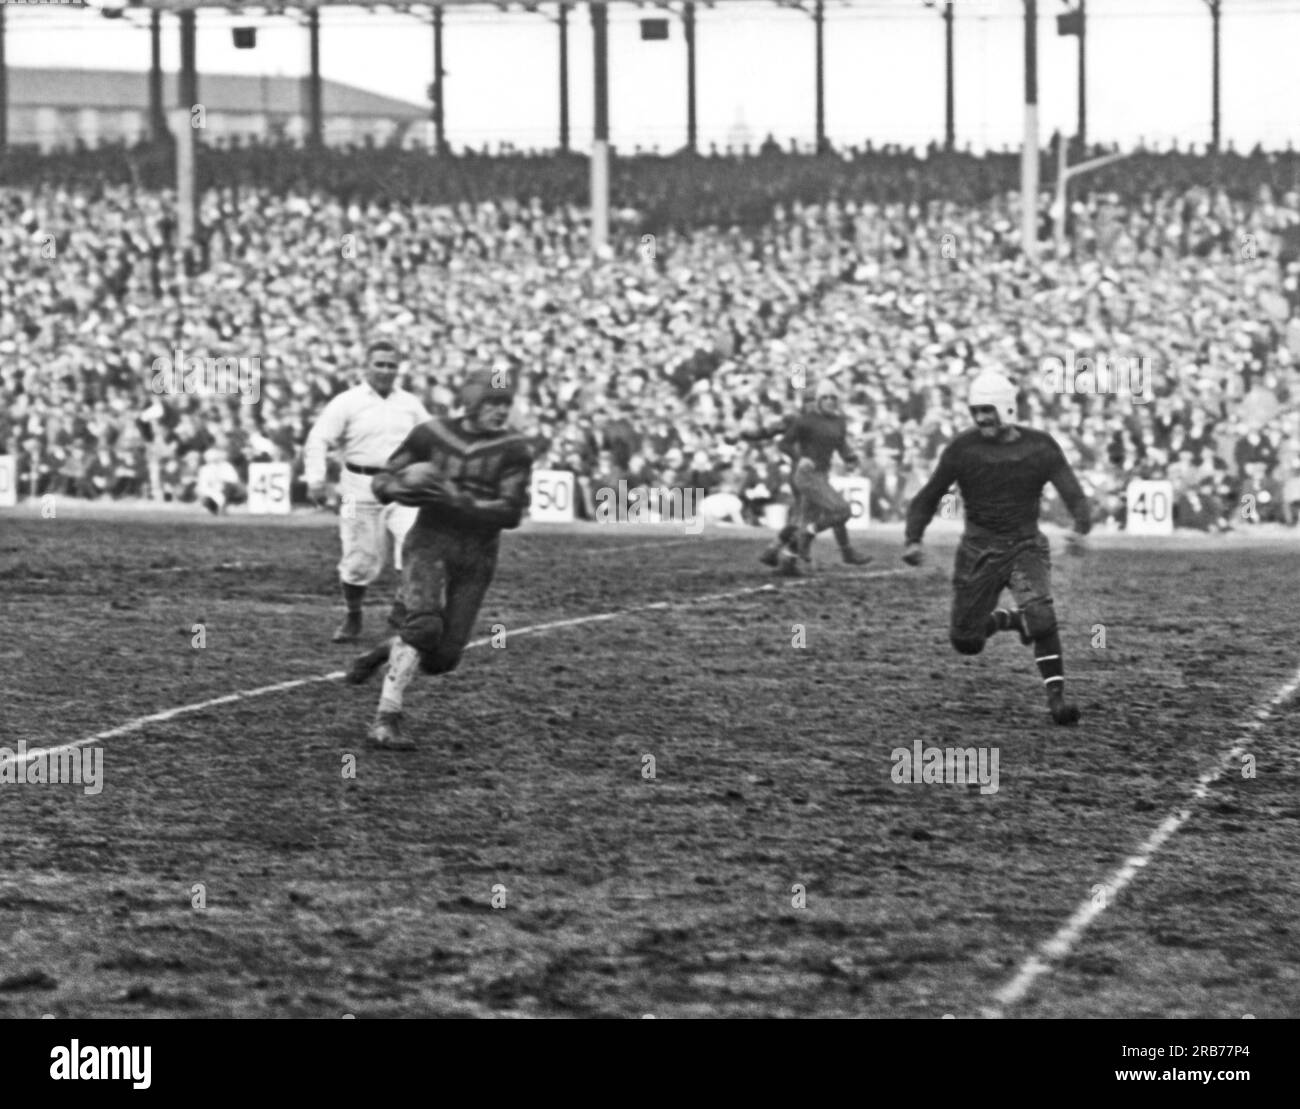 New York, New York: 6 dicembre 1925, il giocatore di football newyorkese Harold "Red" Grange riceve un passaggio in avanti e fa una corsa di 20 yard. Grange ha fatto il suo debutto a New York oggi con i Chicago Bears giocando contro i New York Giants al Polo Grounds. Foto Stock